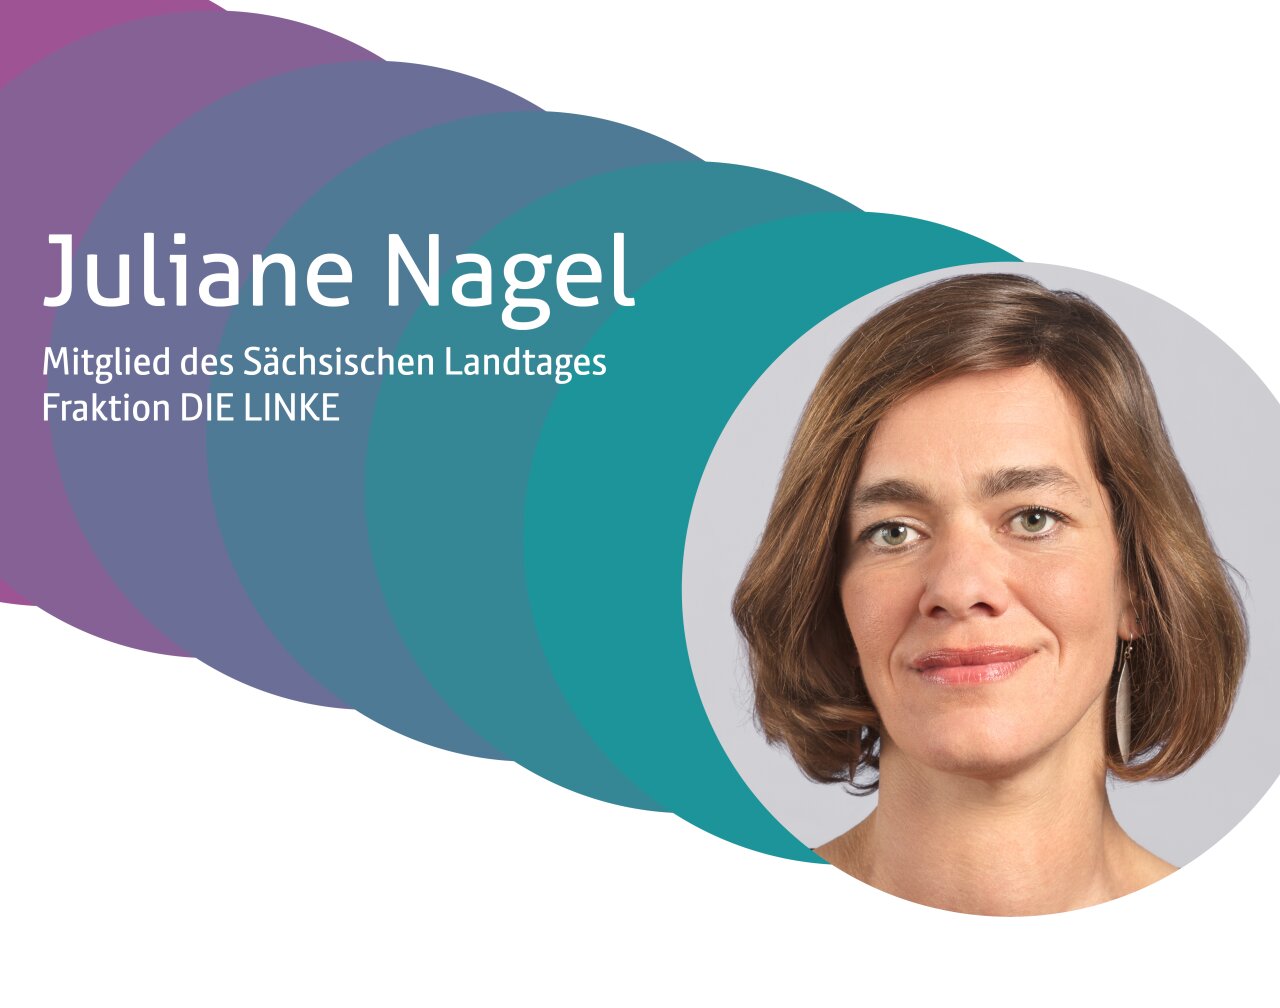 Juliane Nagel, Mitglied des Sächsischen Landtages - Fraktion DIE LINKE.